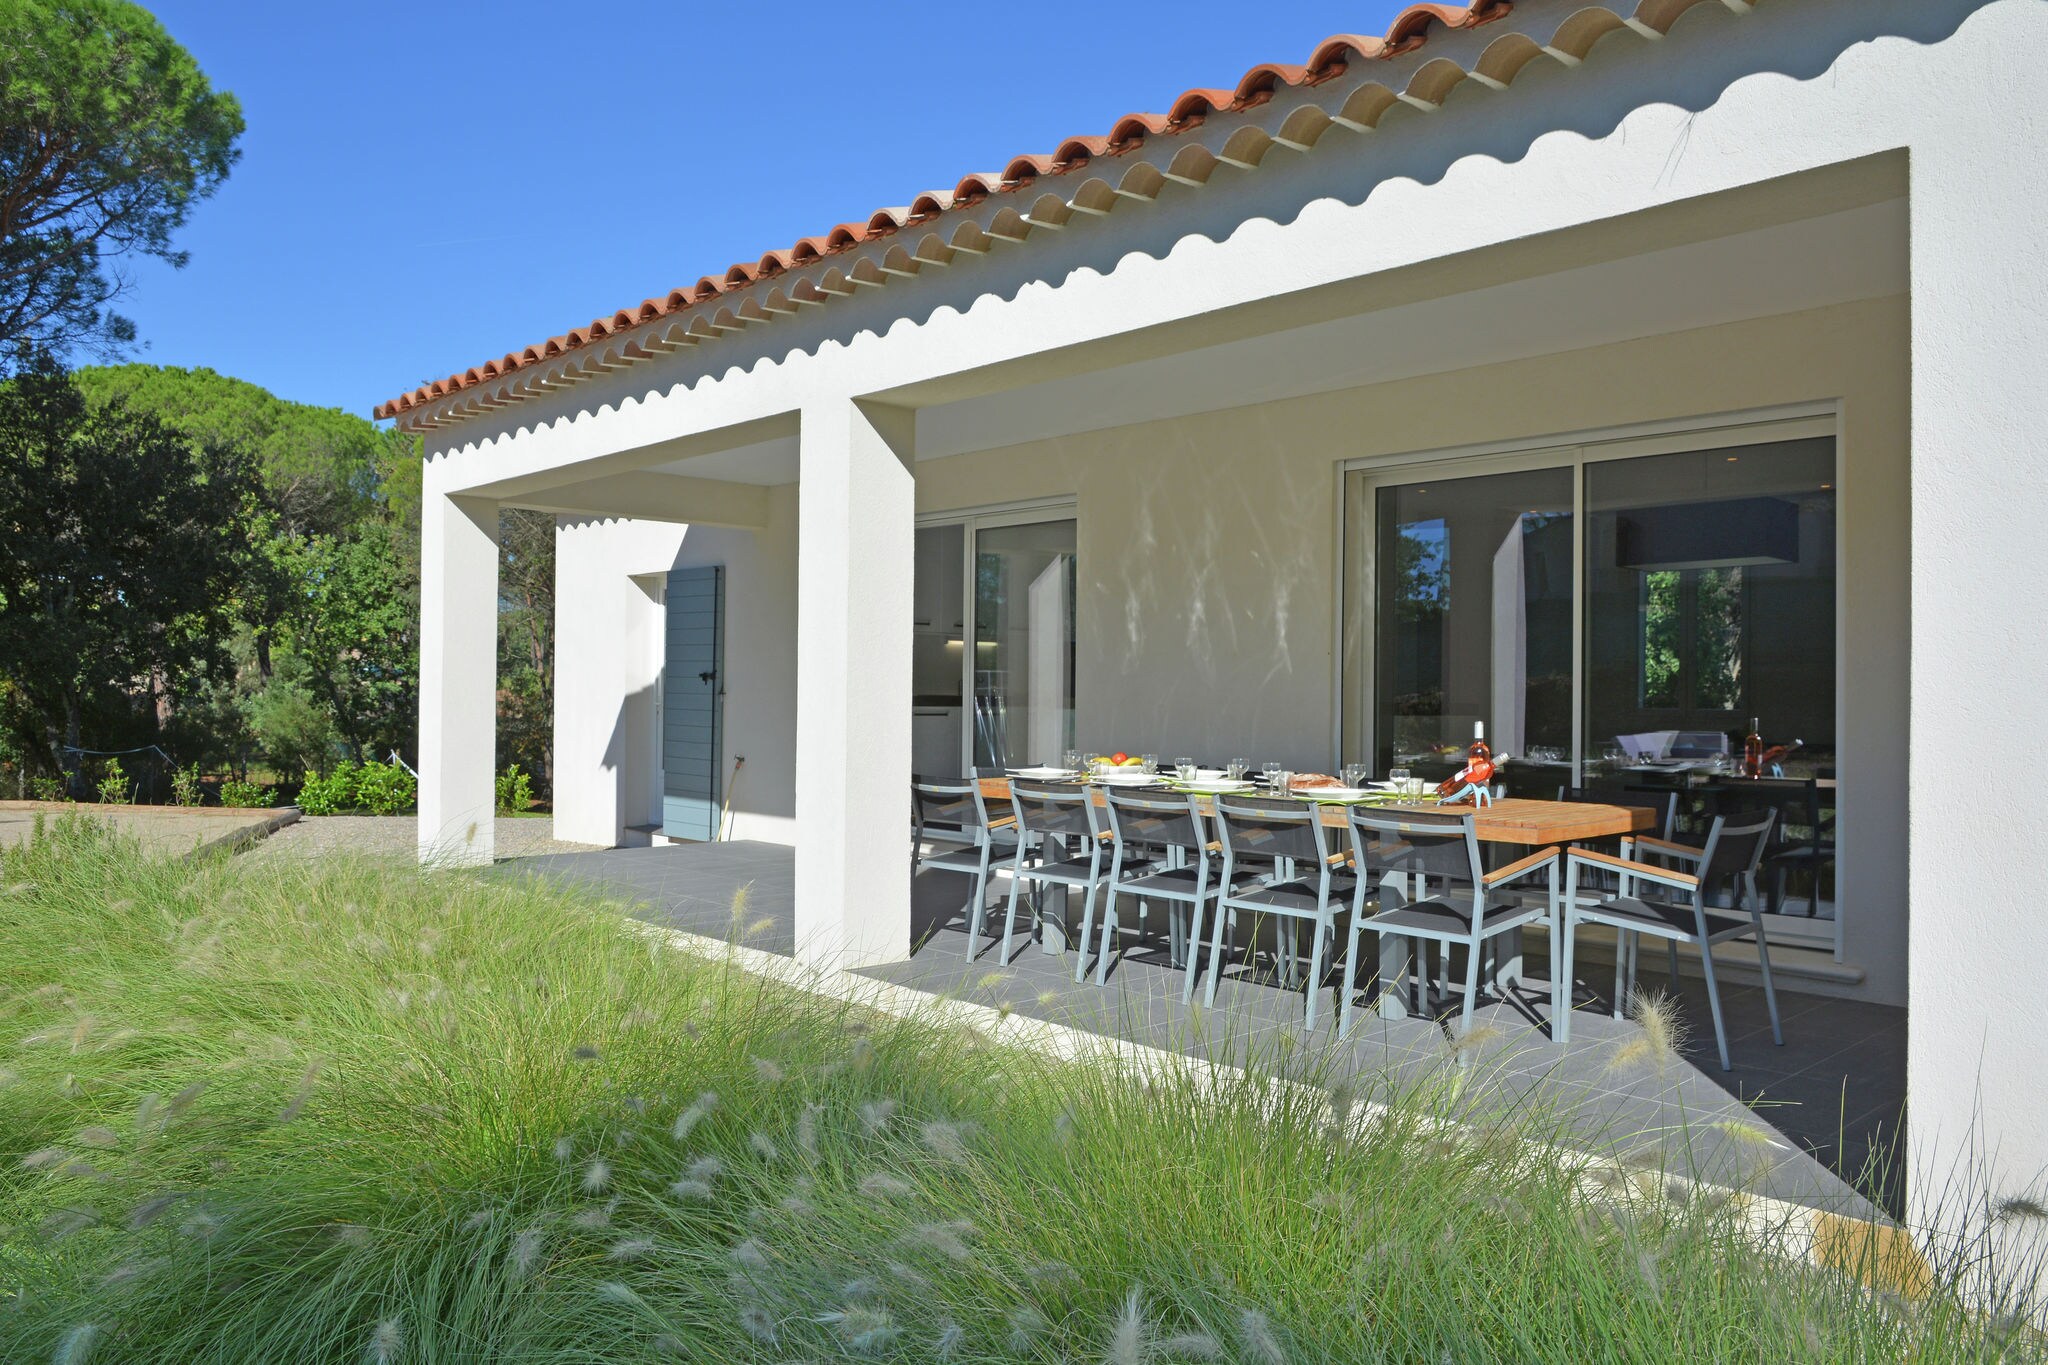 Villa met airco, VERWARMD privezwembad (april 2022) in Provence, op half uur rijden van het strand